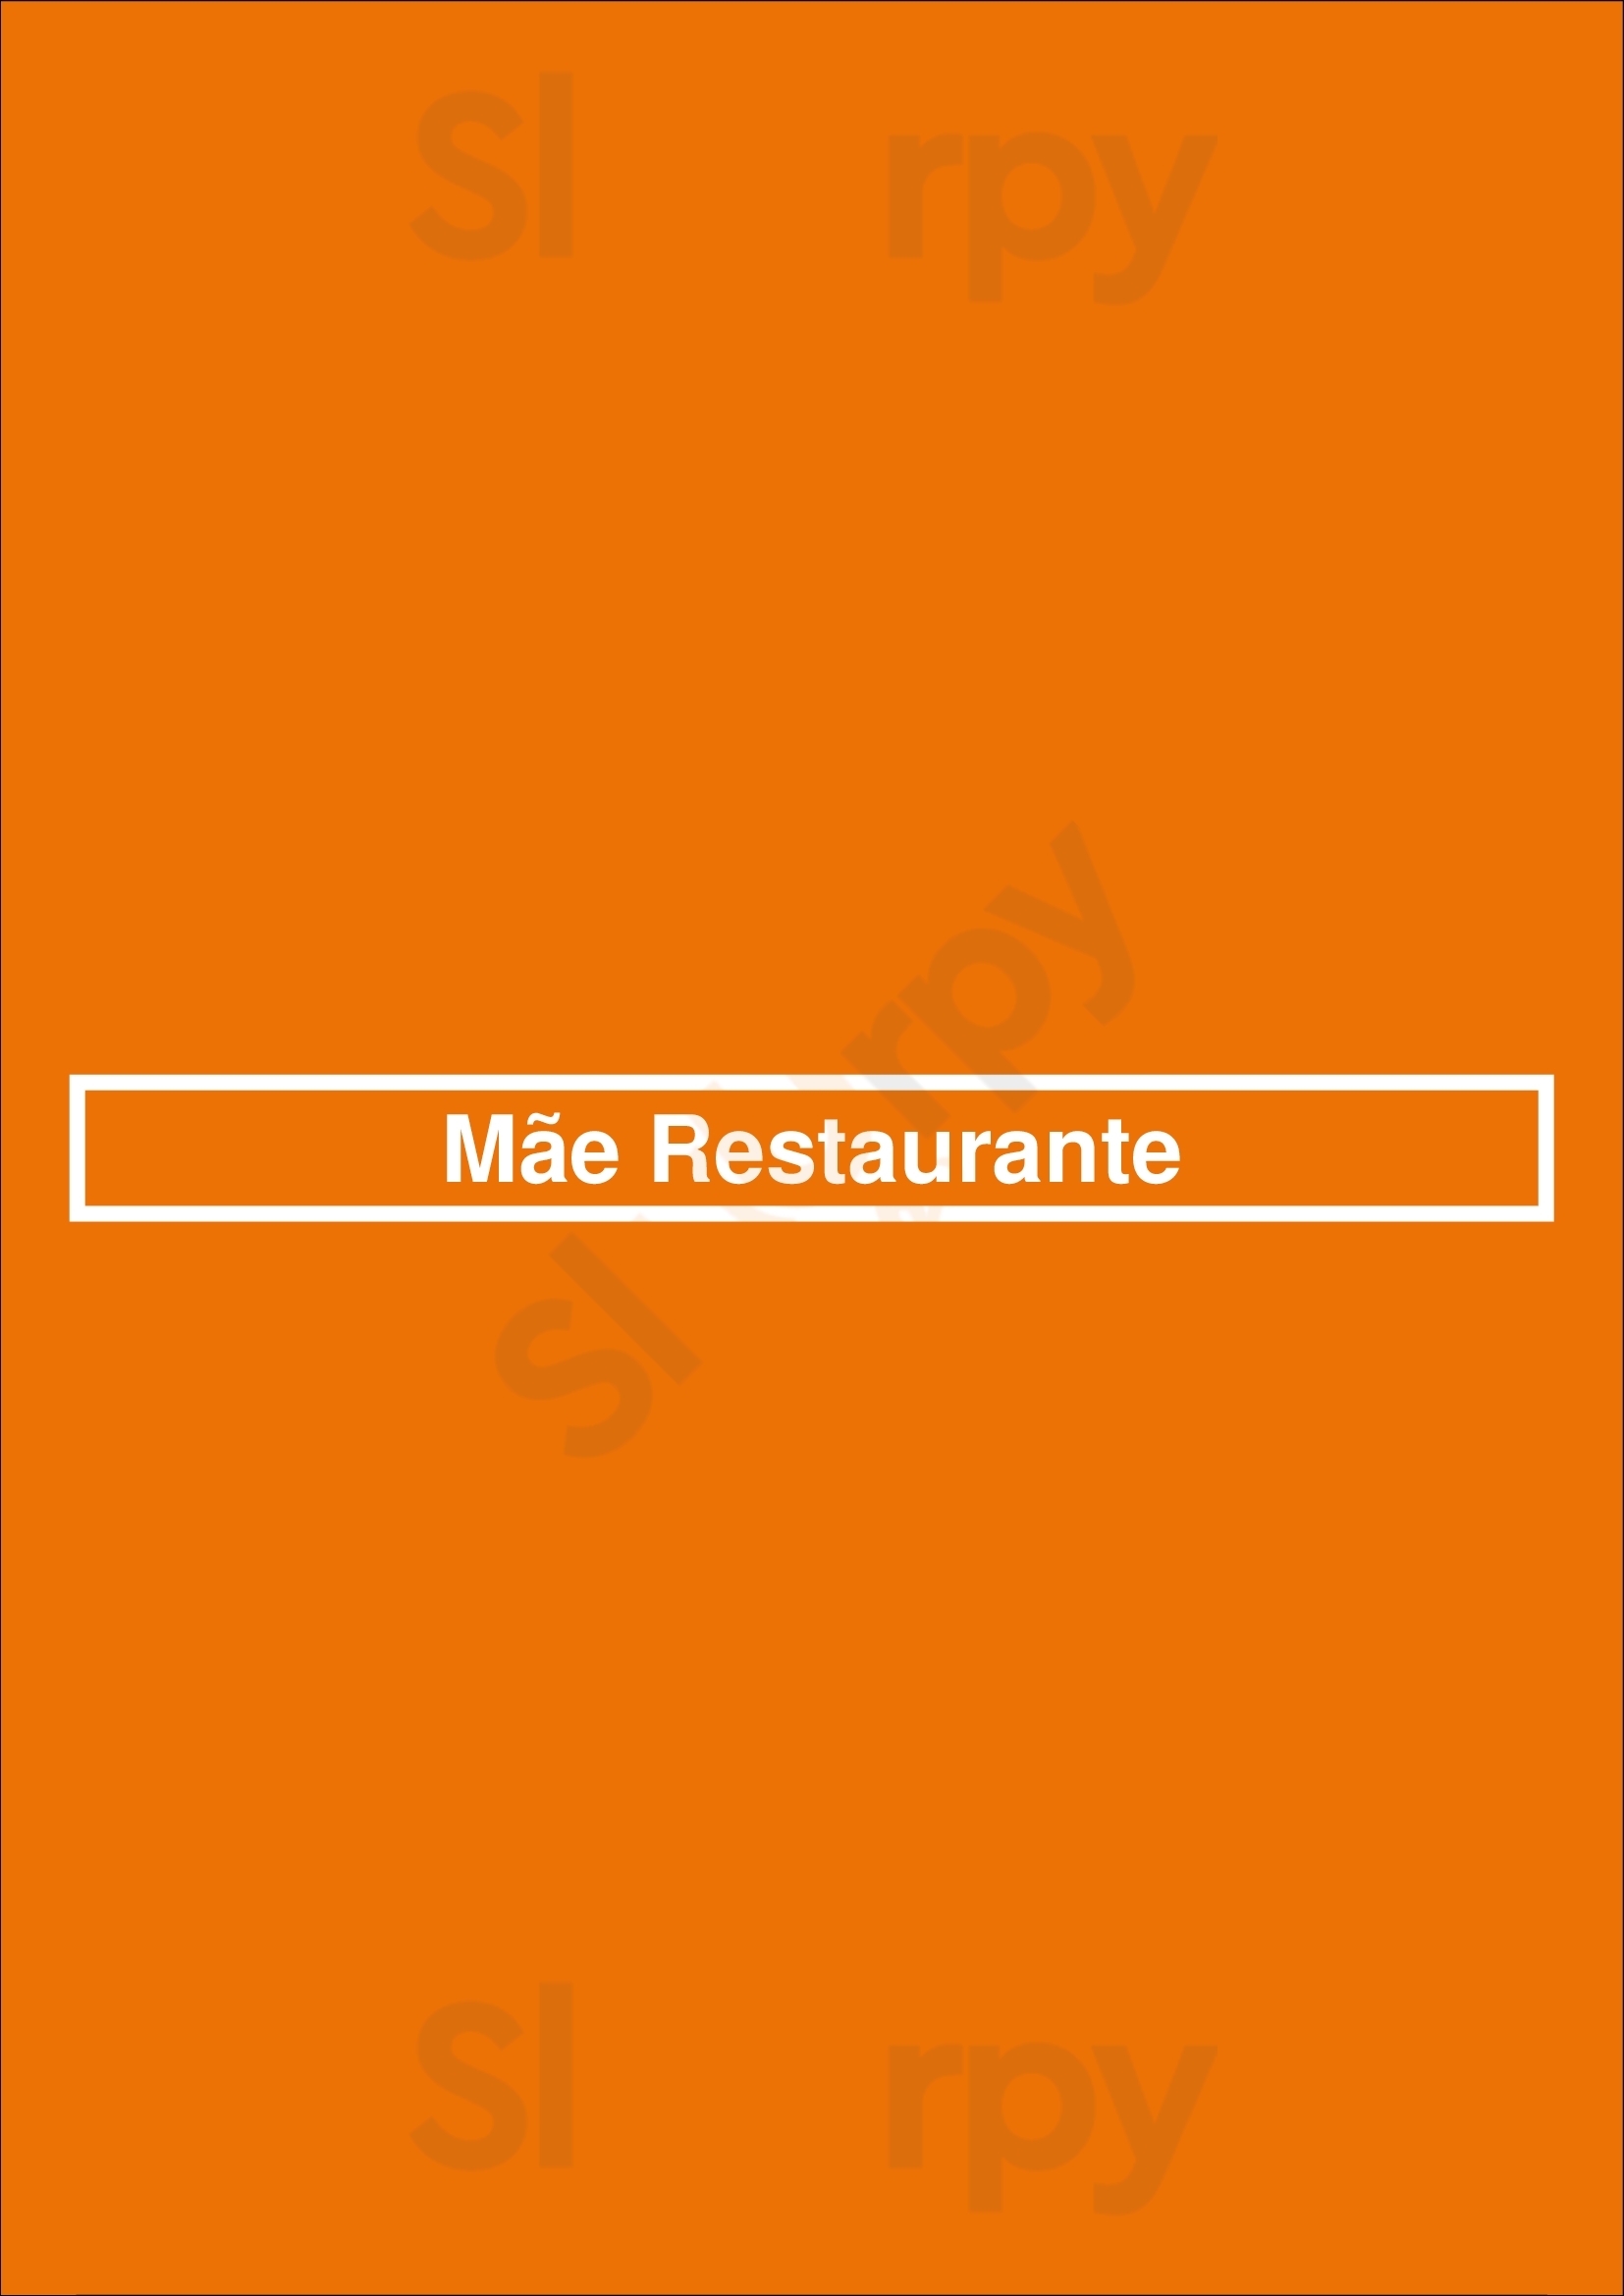 Mãe Restaurante Lisboa Menu - 1